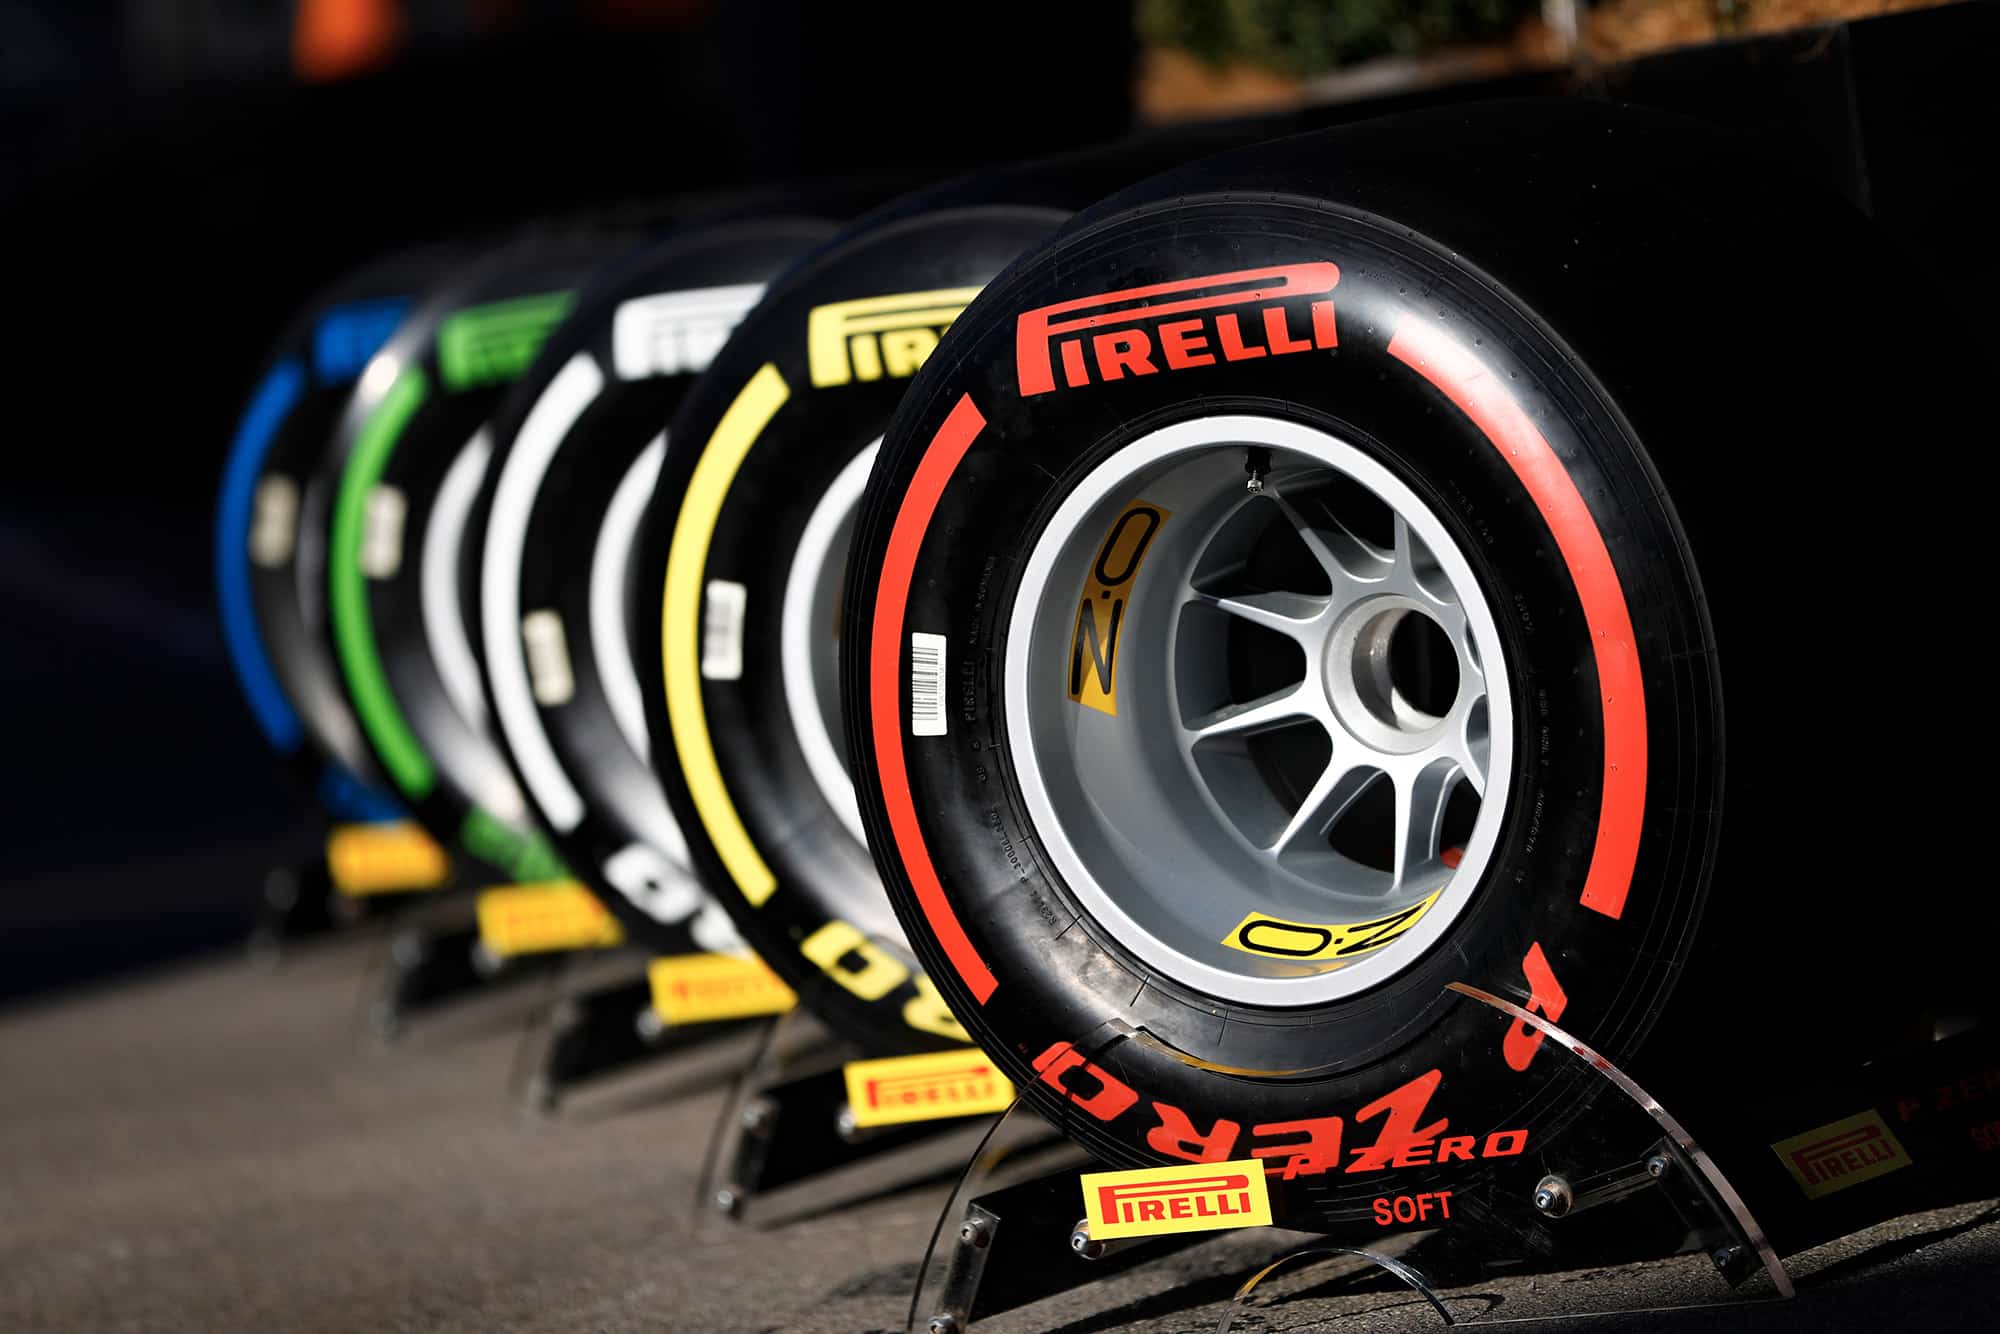 Pirelli tyres at 2019 pre-season F1 testing